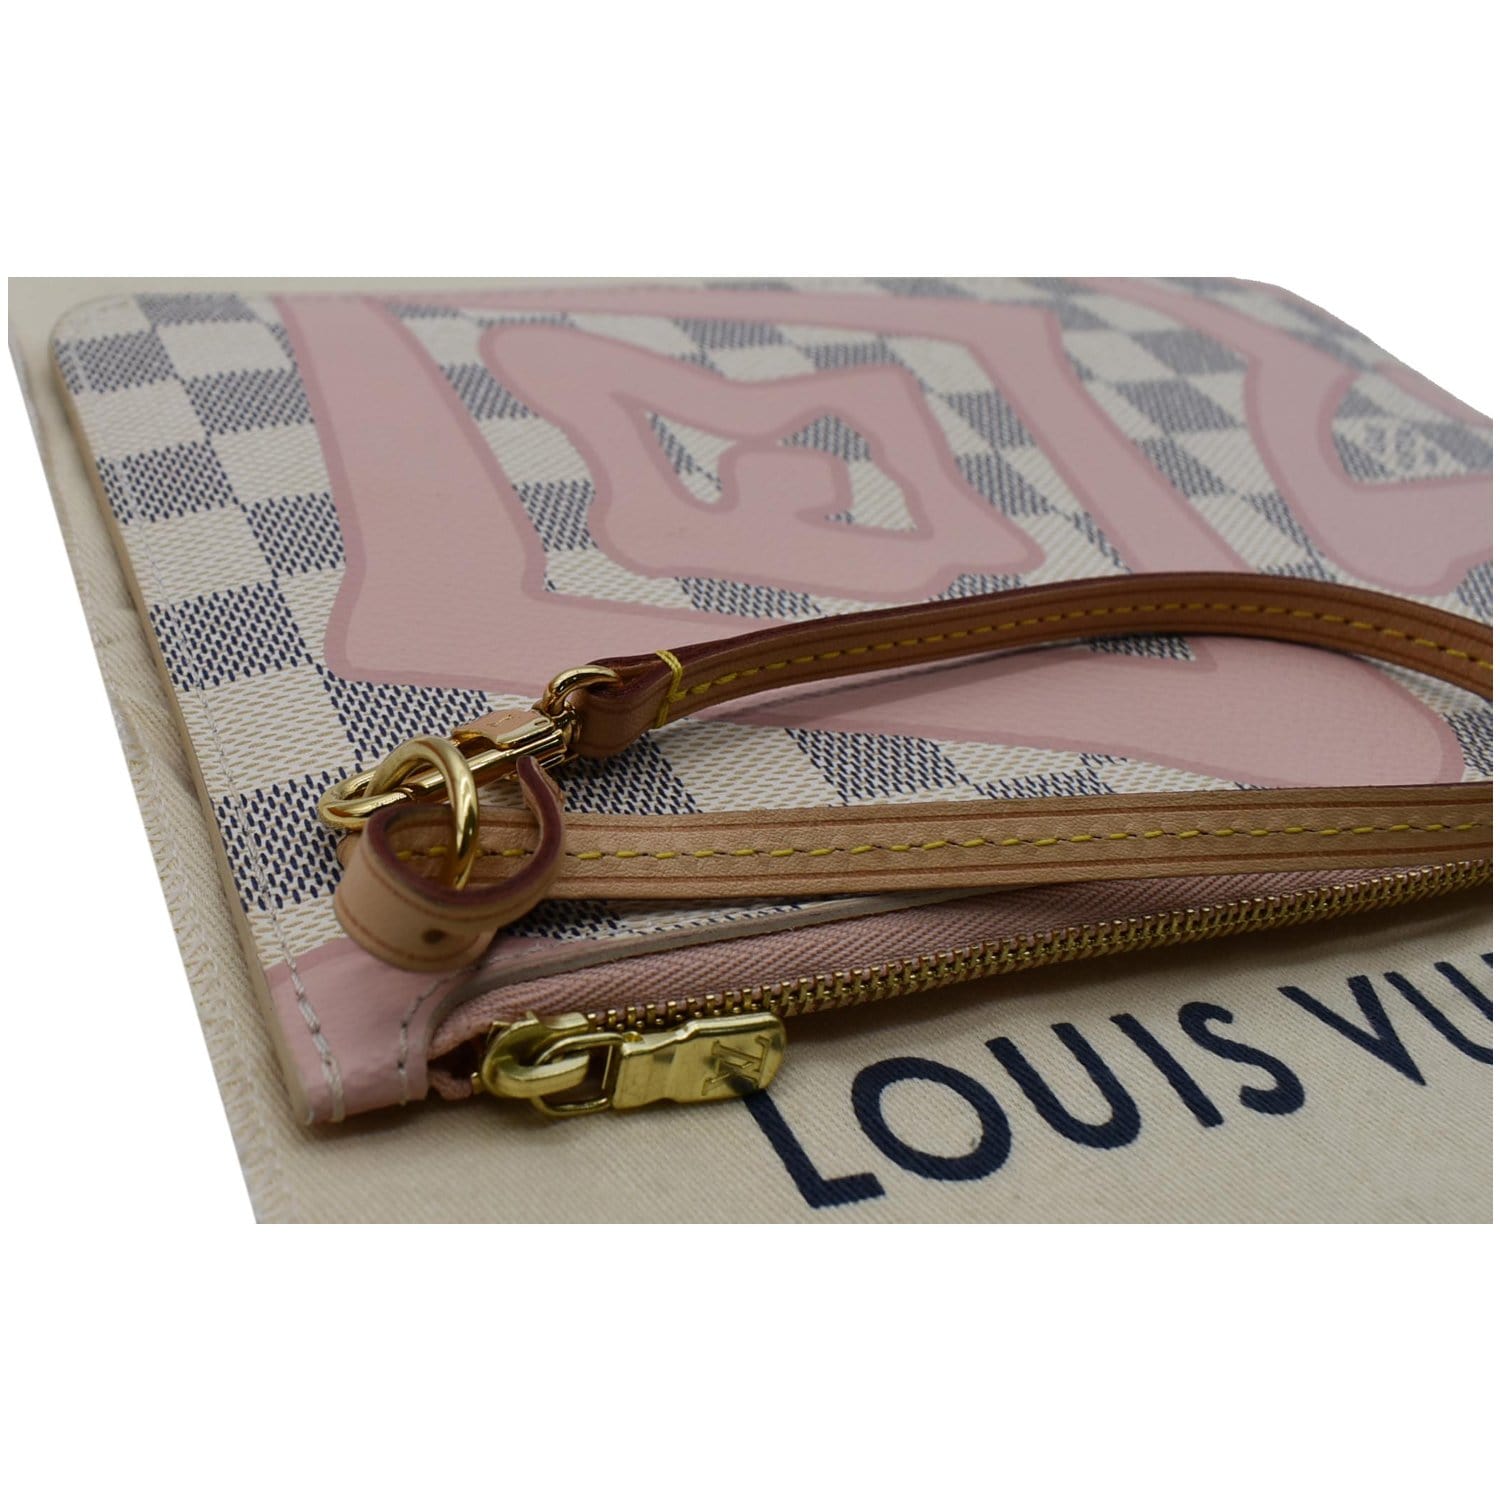 Louis Vuitton Damier Azur neverfull pouch – My Girlfriend's